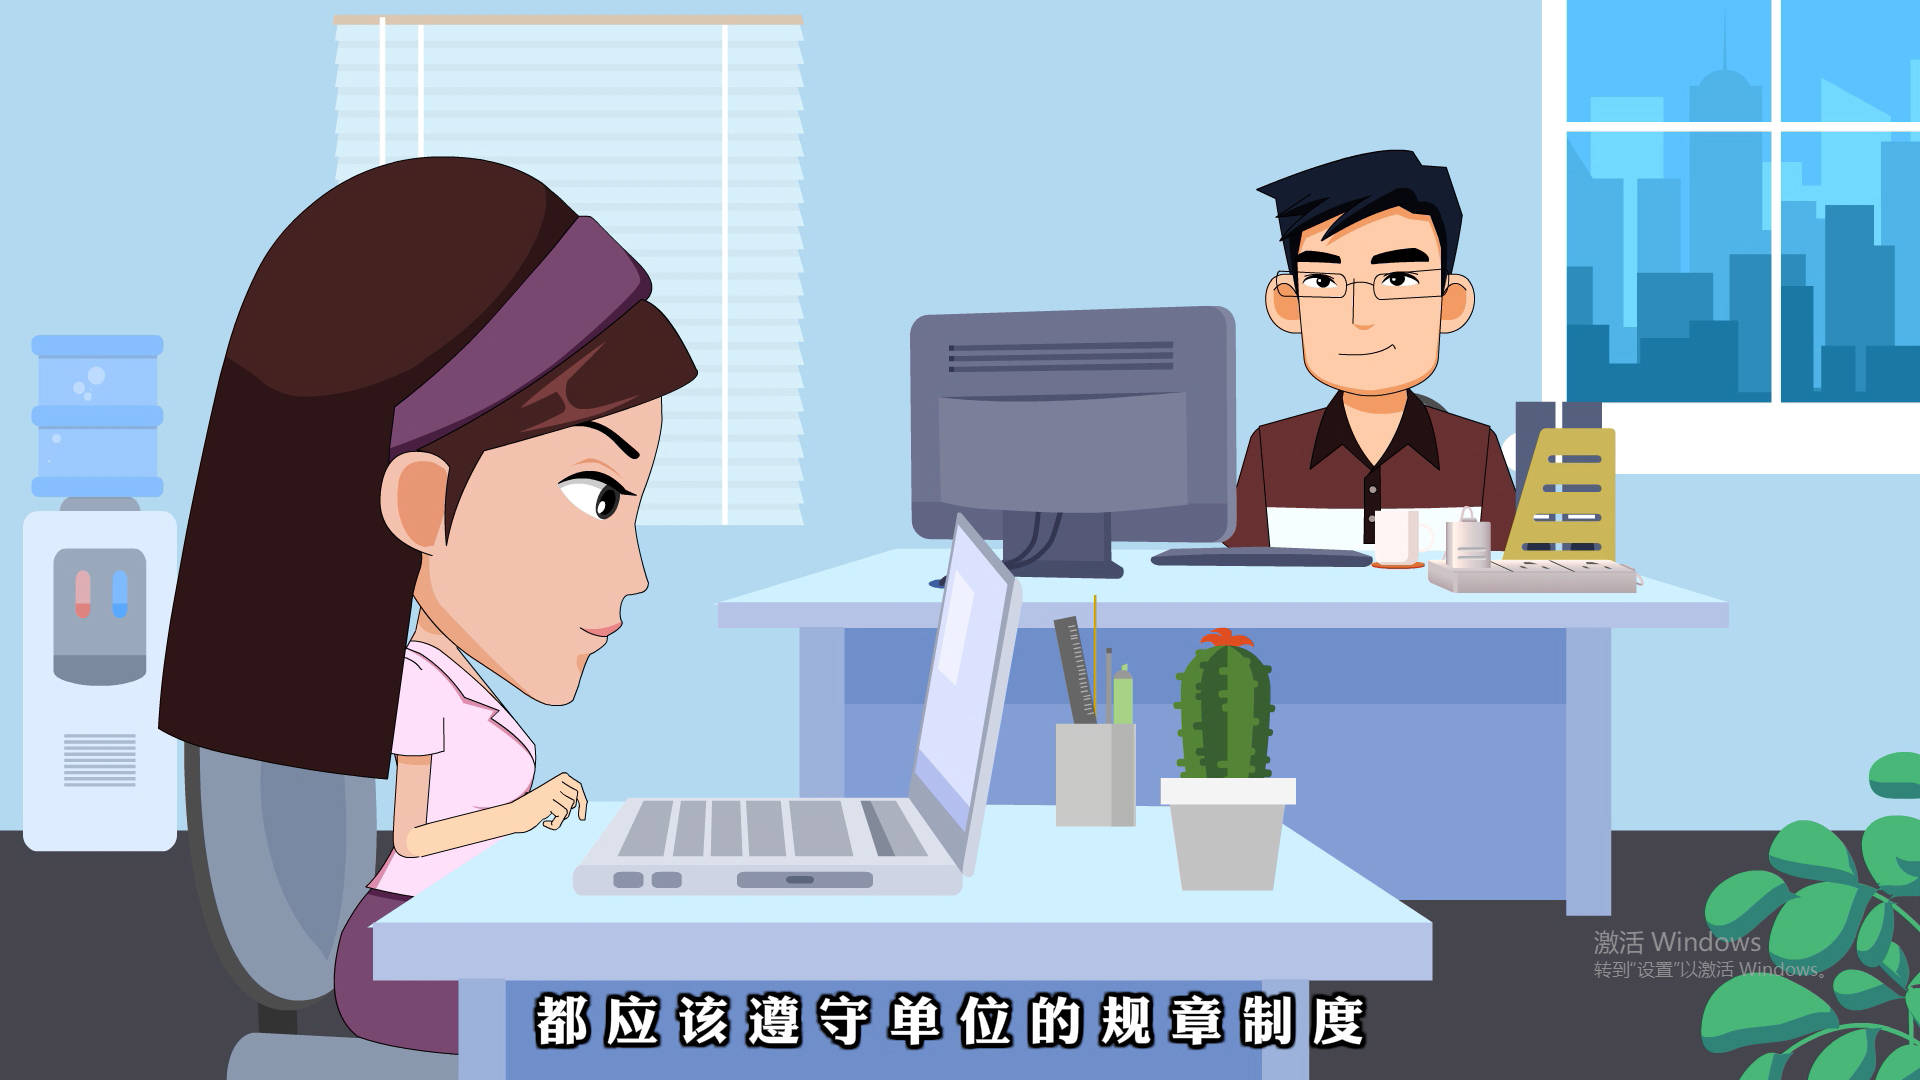 重庆法制类劳动法MG动画宣传视频插图2